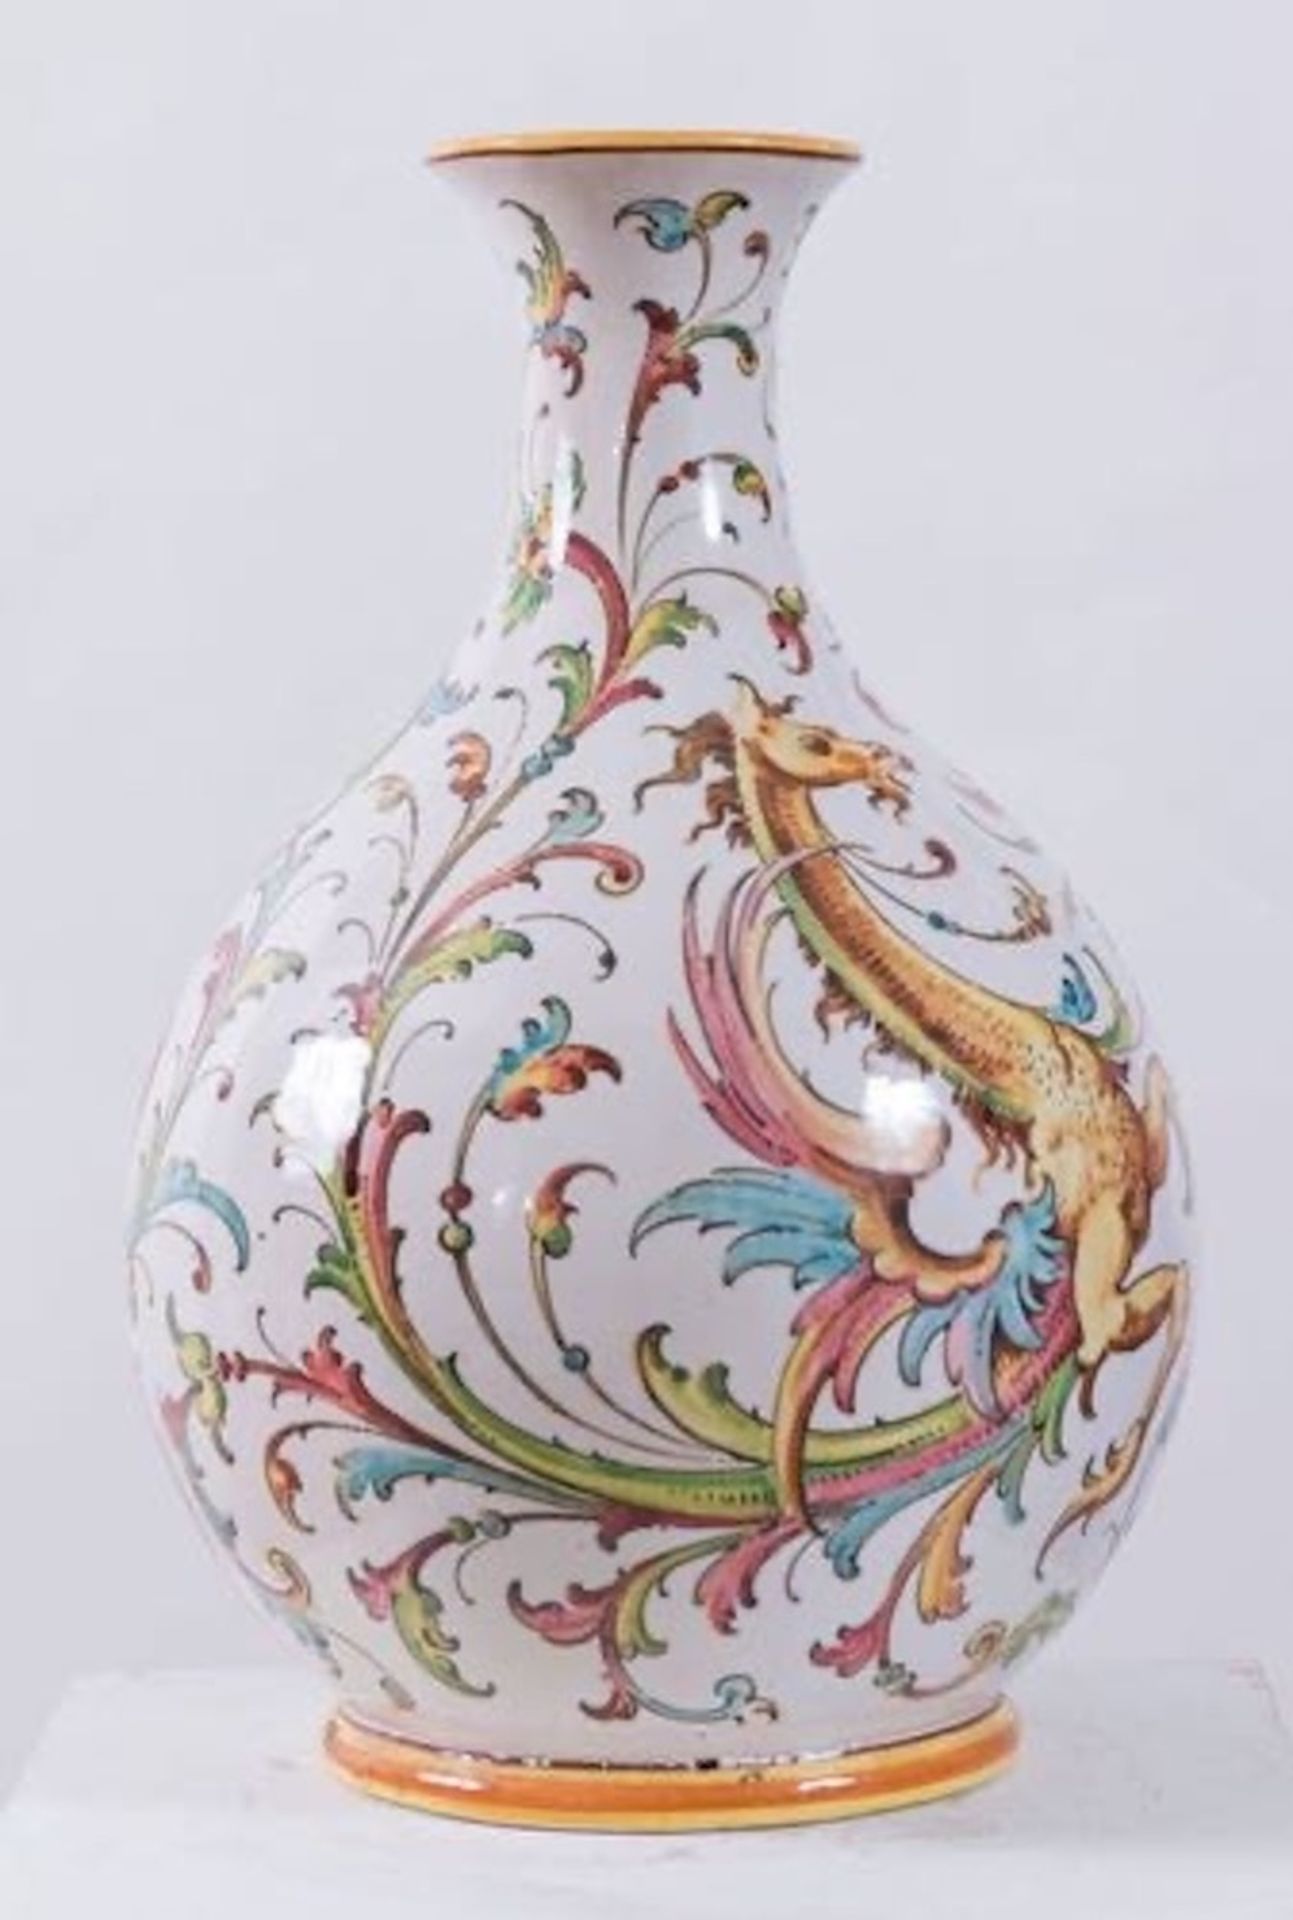 ANGELO MINGHETTI, Bologna, XX secolo. Vaso in ceramica policroma. H. cm 40; diametro cm 25. Sotto la